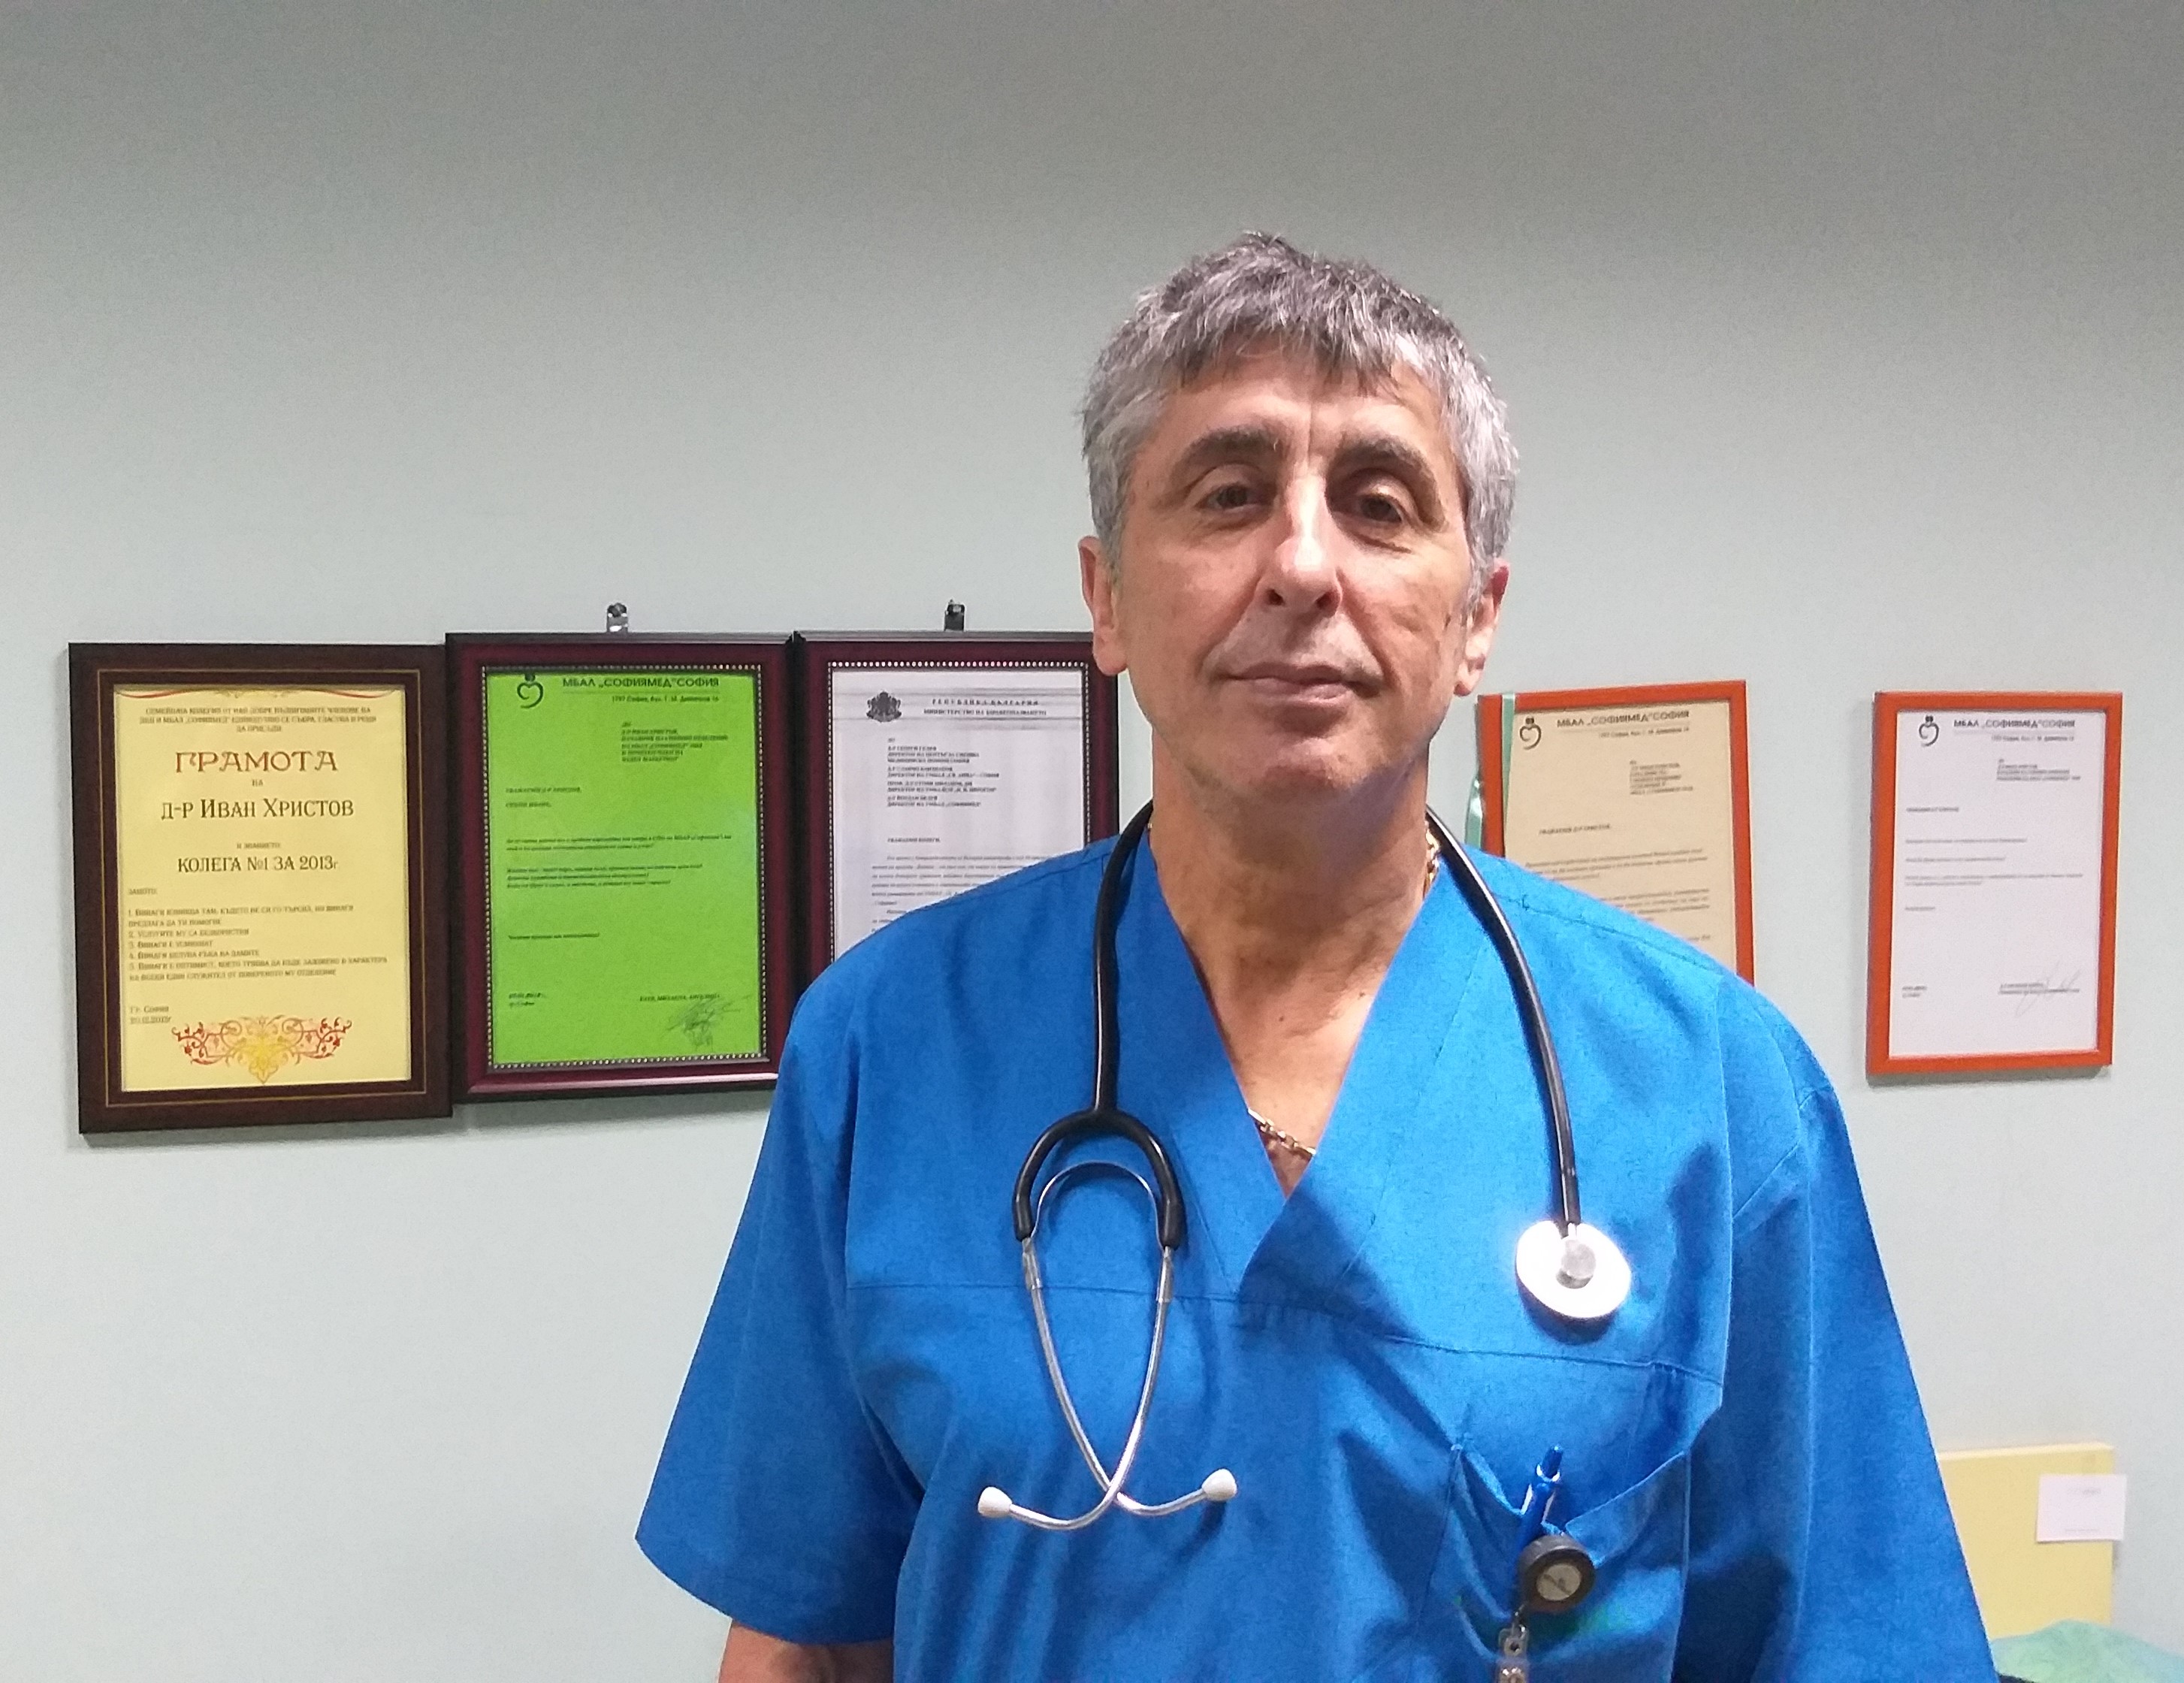 Д-р Иван Христов, Завеждащ на Спешното отделение в УМБАЛ „Софиямед“ хвърля светлина върху основните спешни състояния, които изискват незабавна лекарска намеса